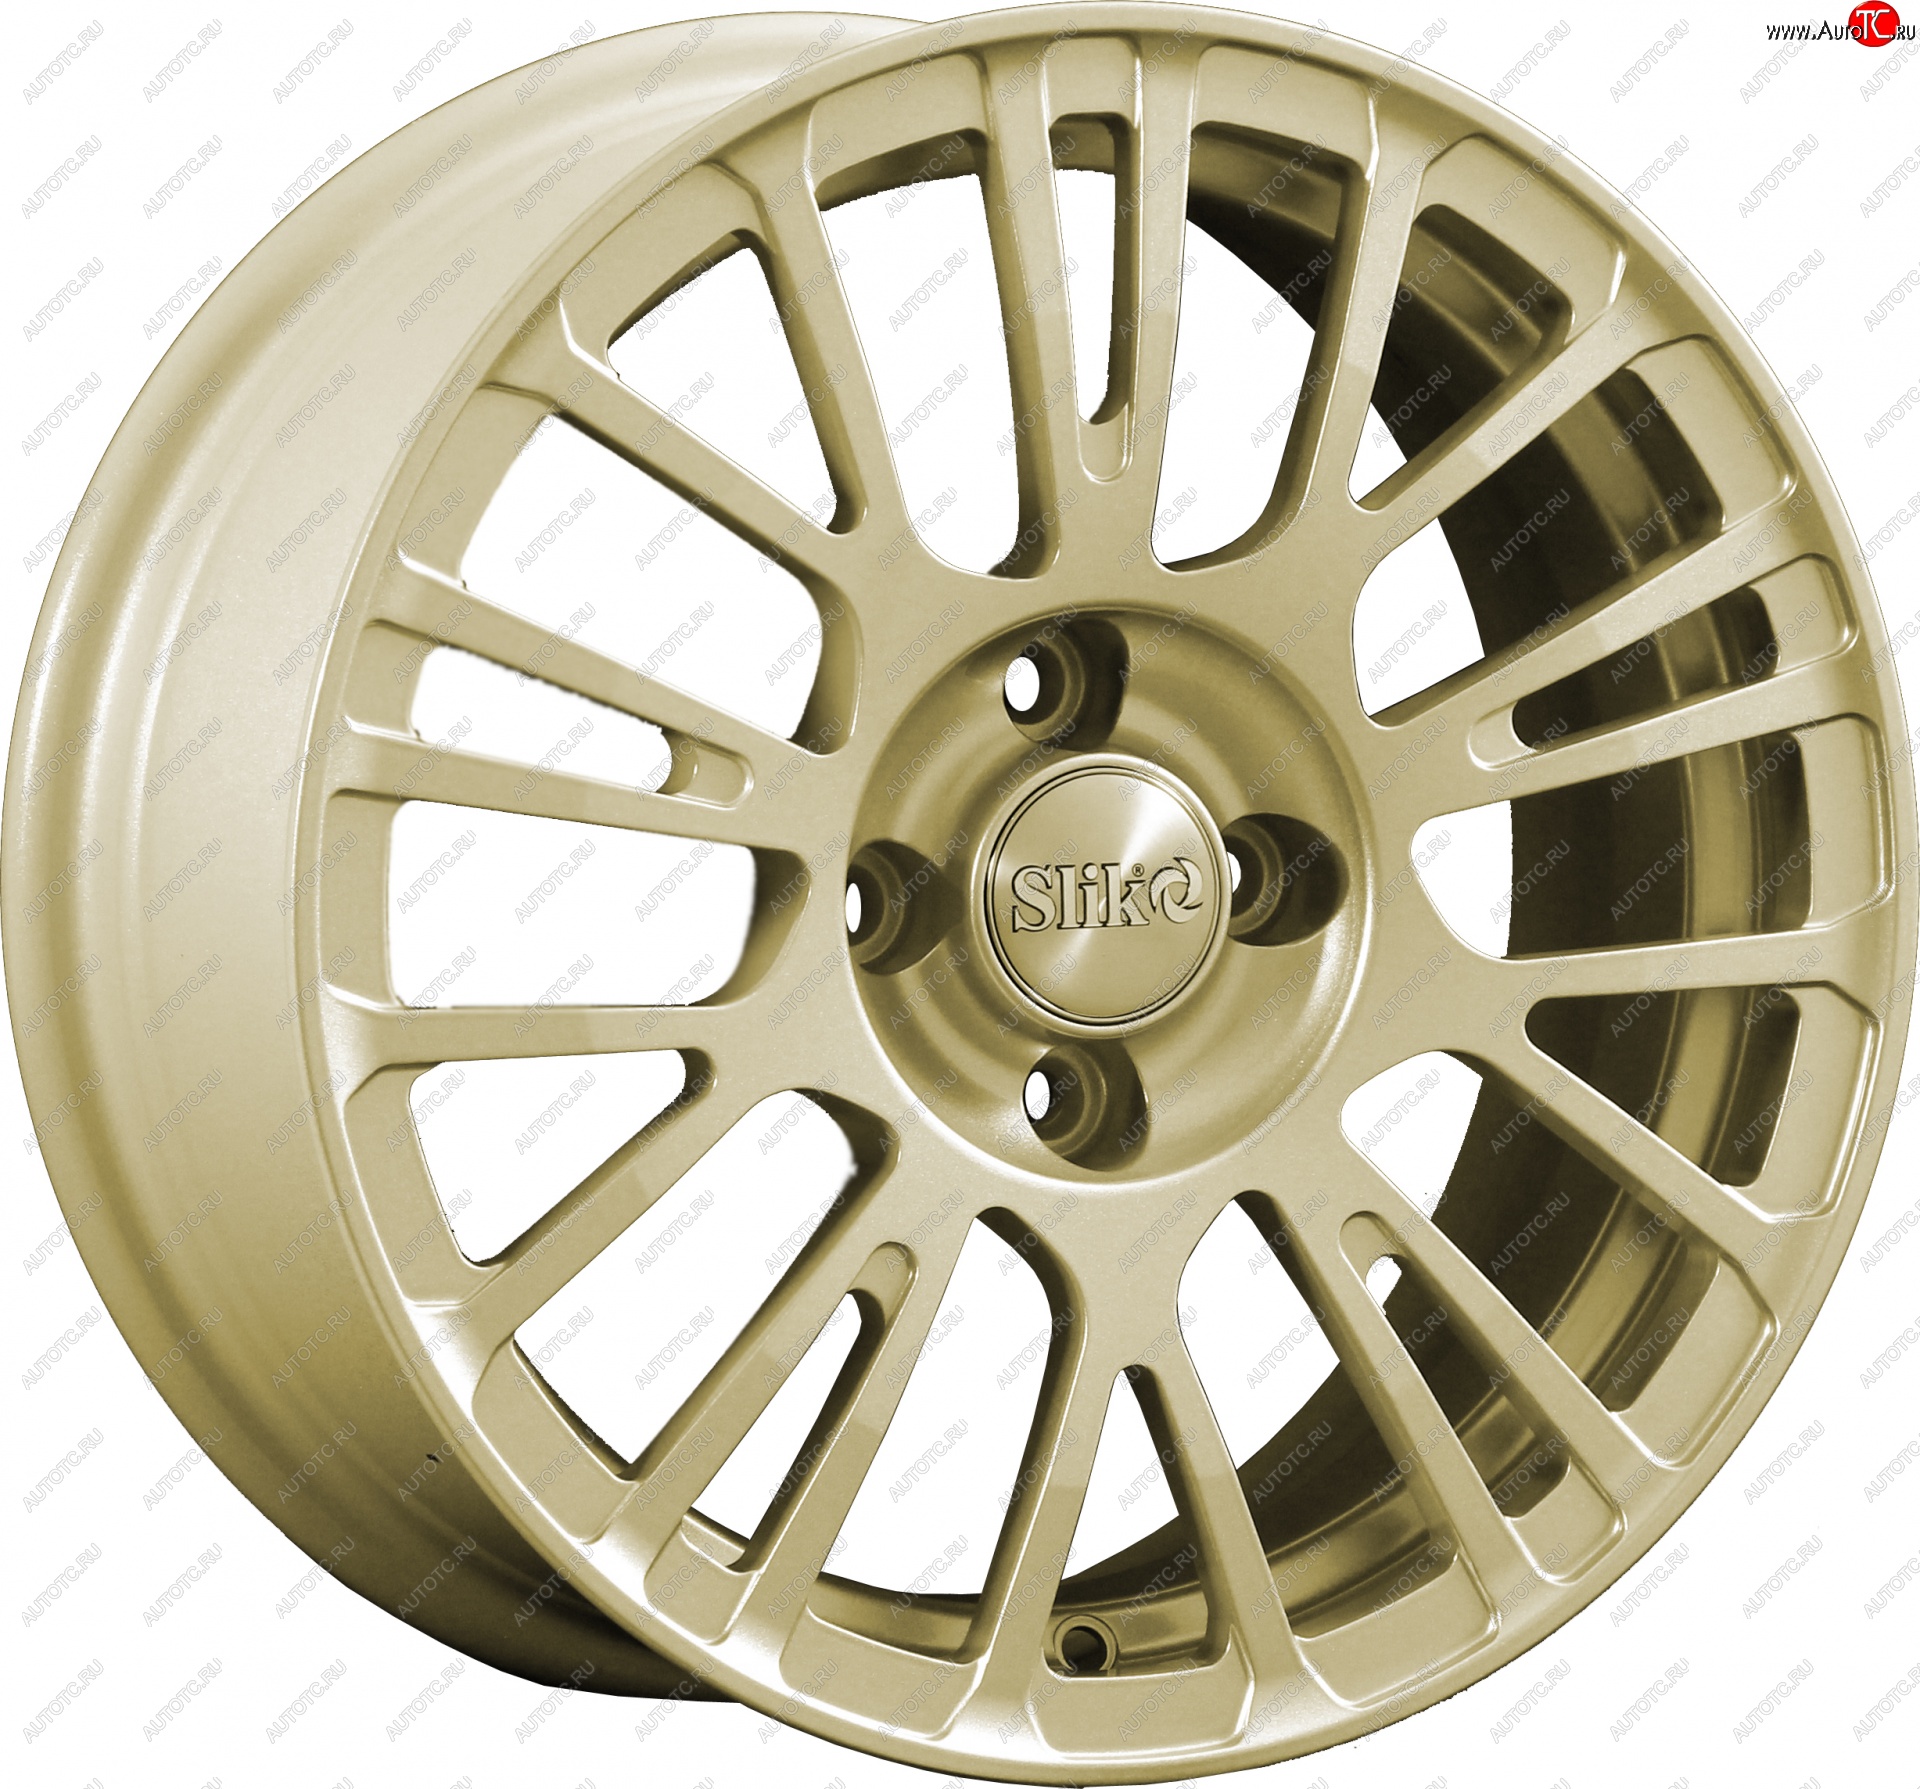 11 899 р. Кованый диск Slik Classik 6.5x15 (Металлик золотой) Opel Astra H универсал рестайлинг (2007-2015) 4x100.0xDIA56.5xET35.0 (Цвет: Металлик золотой)